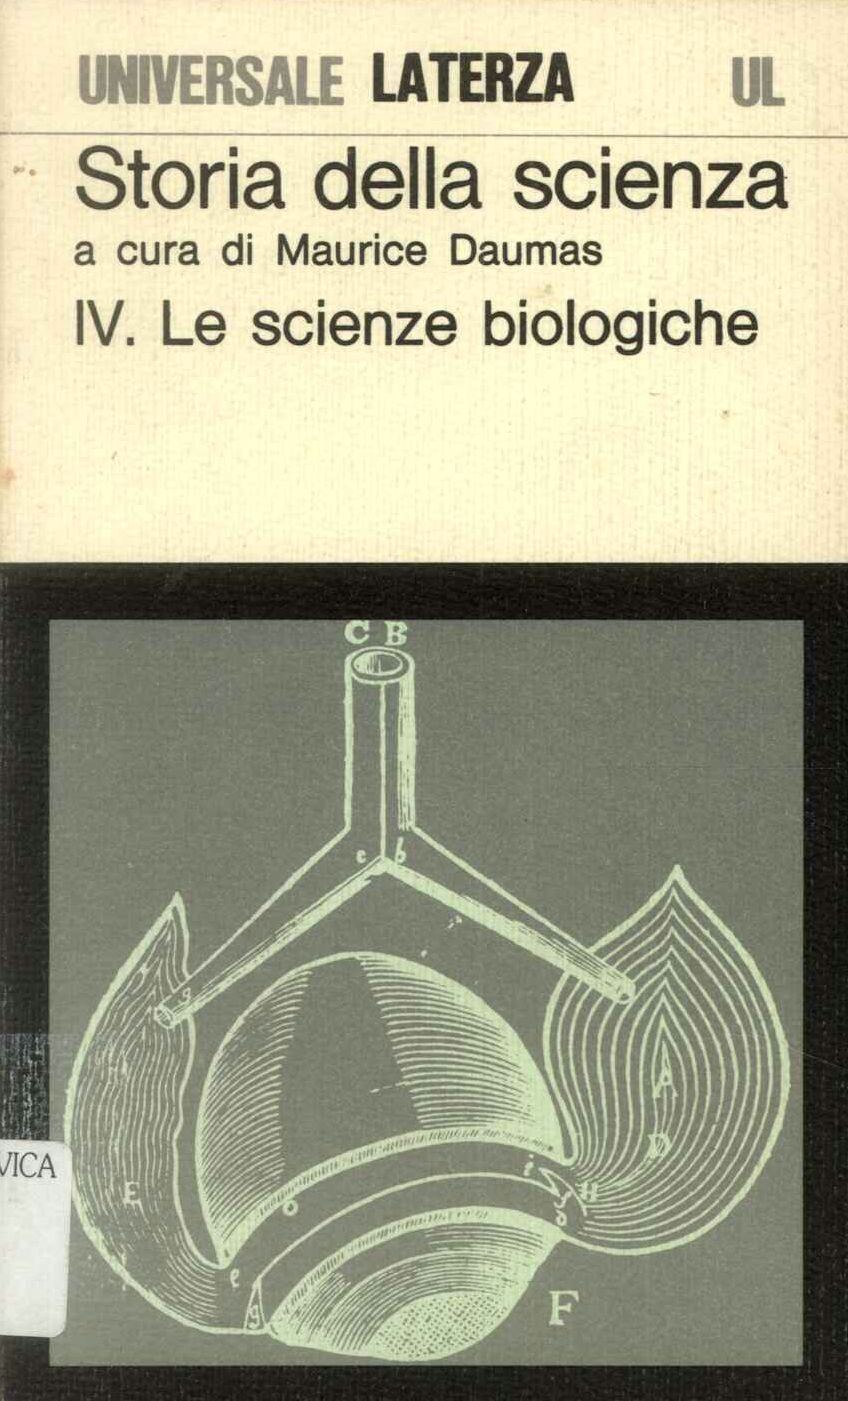 Storia della scienza IV°. Le scienze biologiche